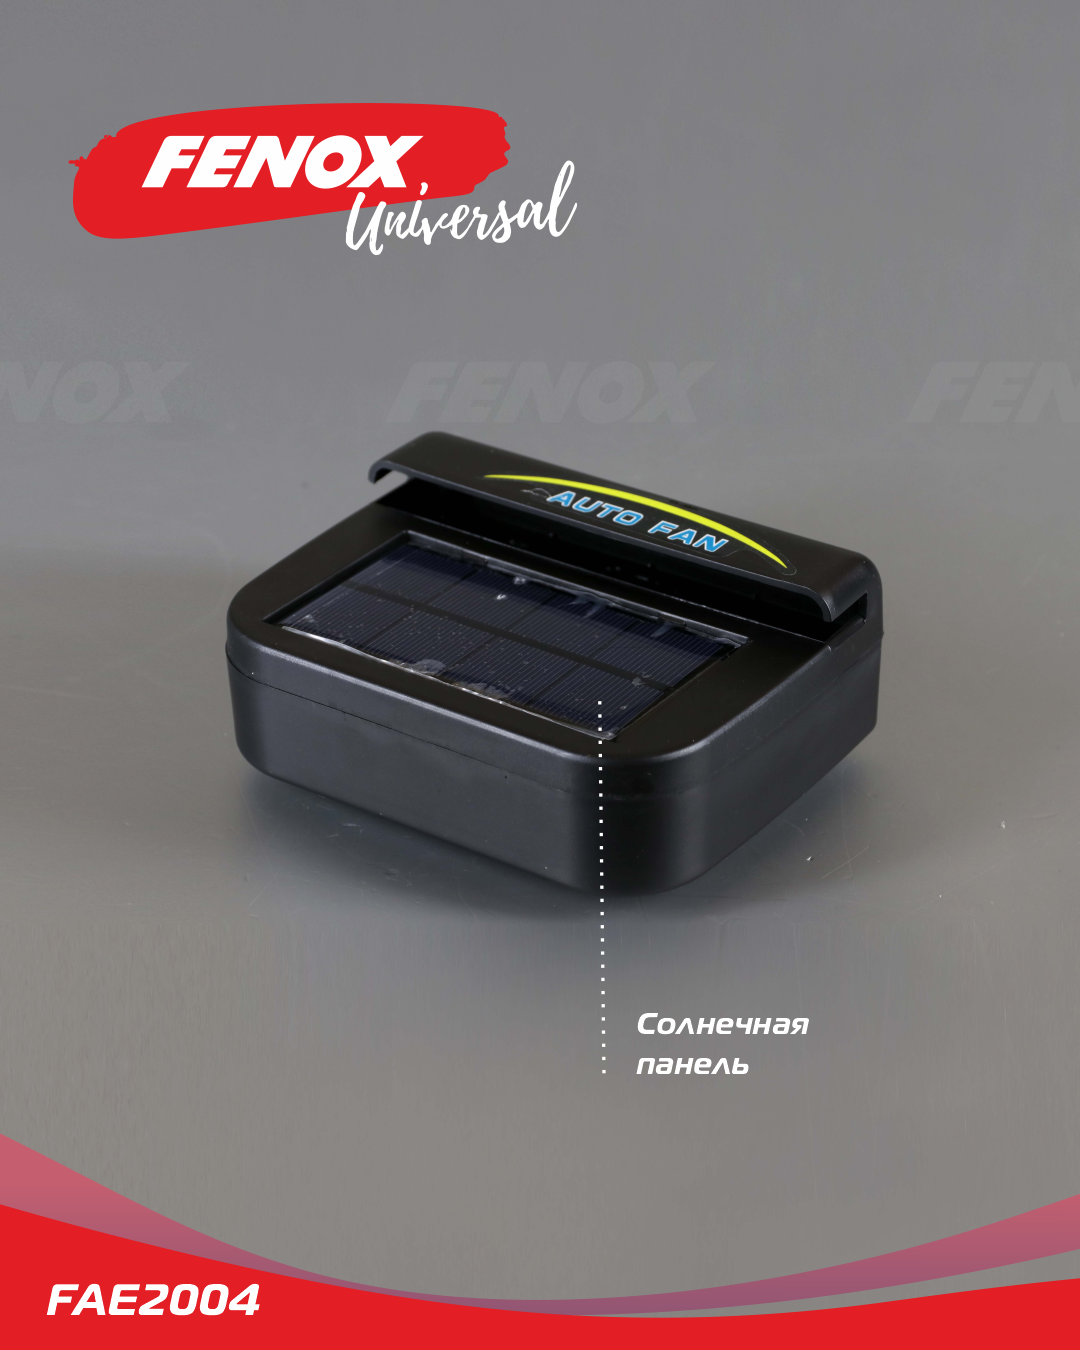 Вентилятор для автомобиля на солнечной энергии - Fenox FAE2004